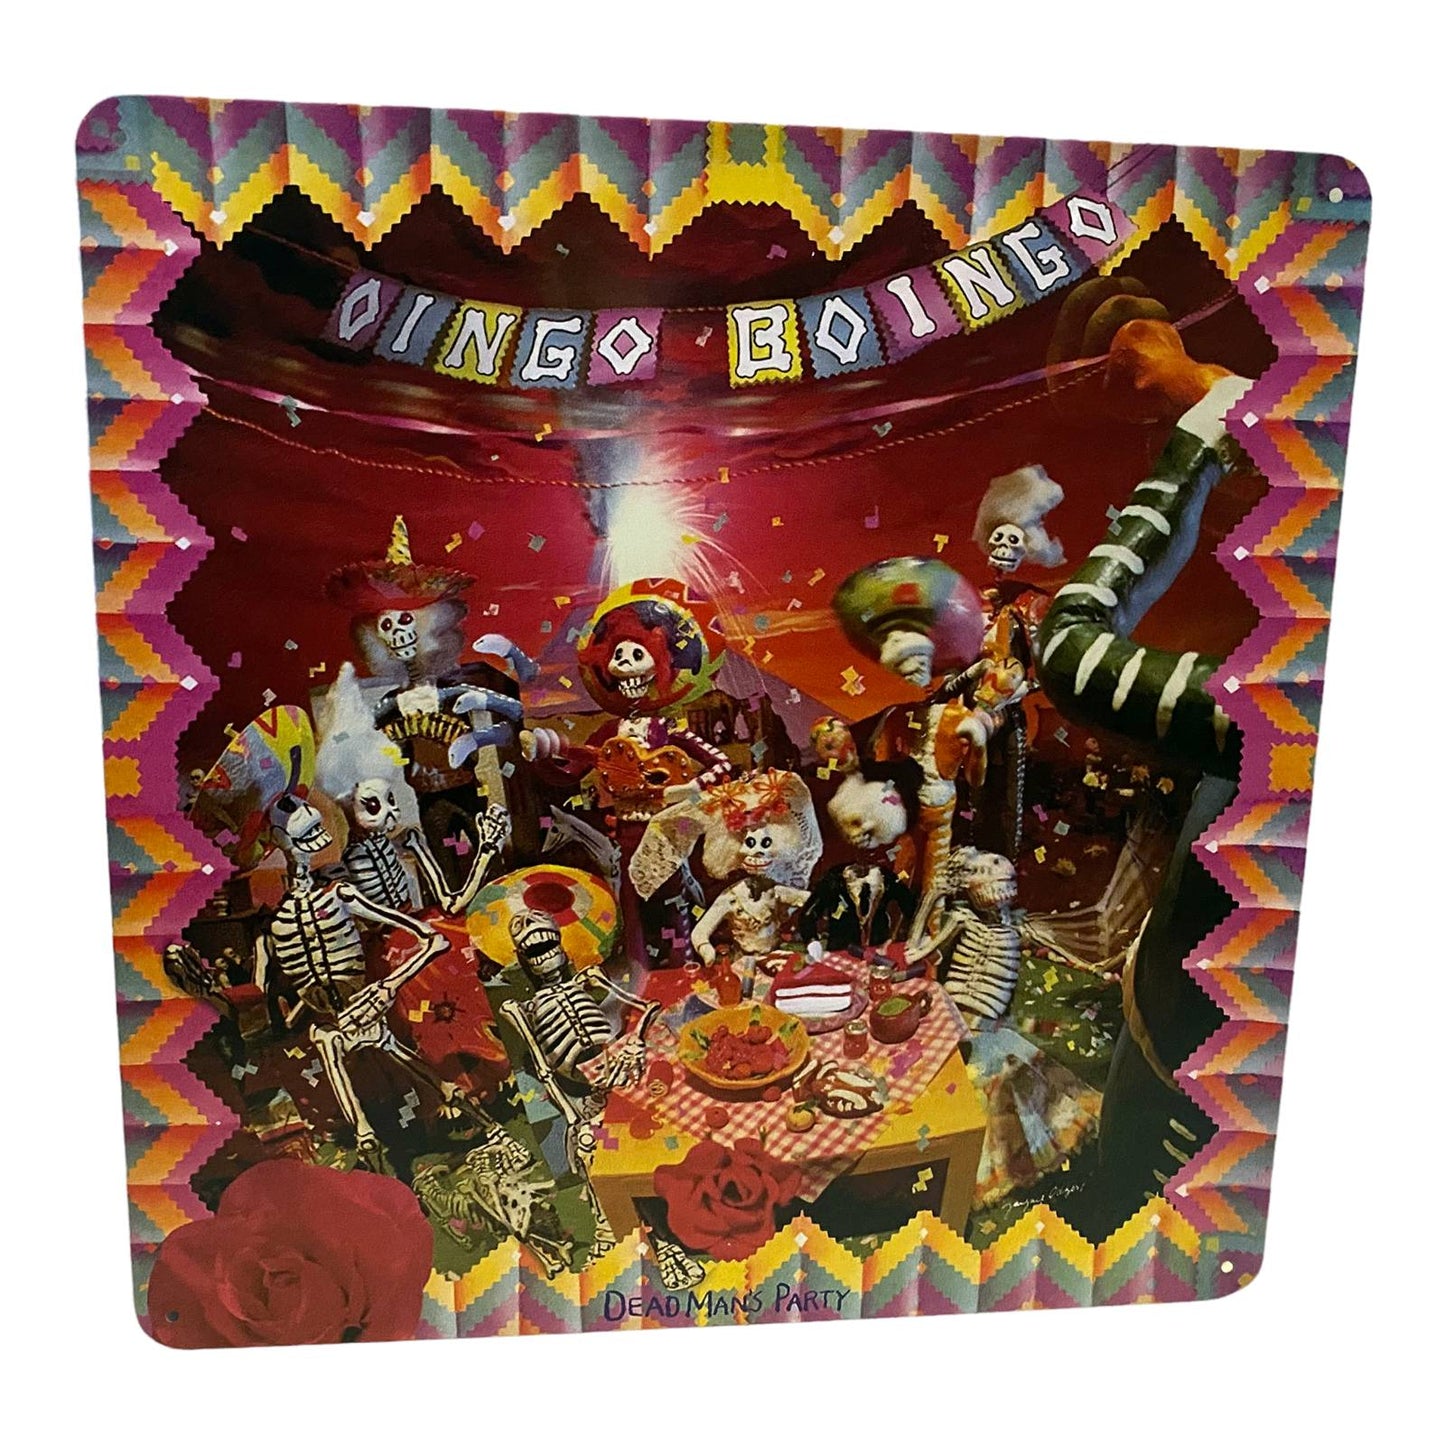 Oingo Boingo - Dead Man's Party Album Cover Metal Print Tin Sign 12"x 12"